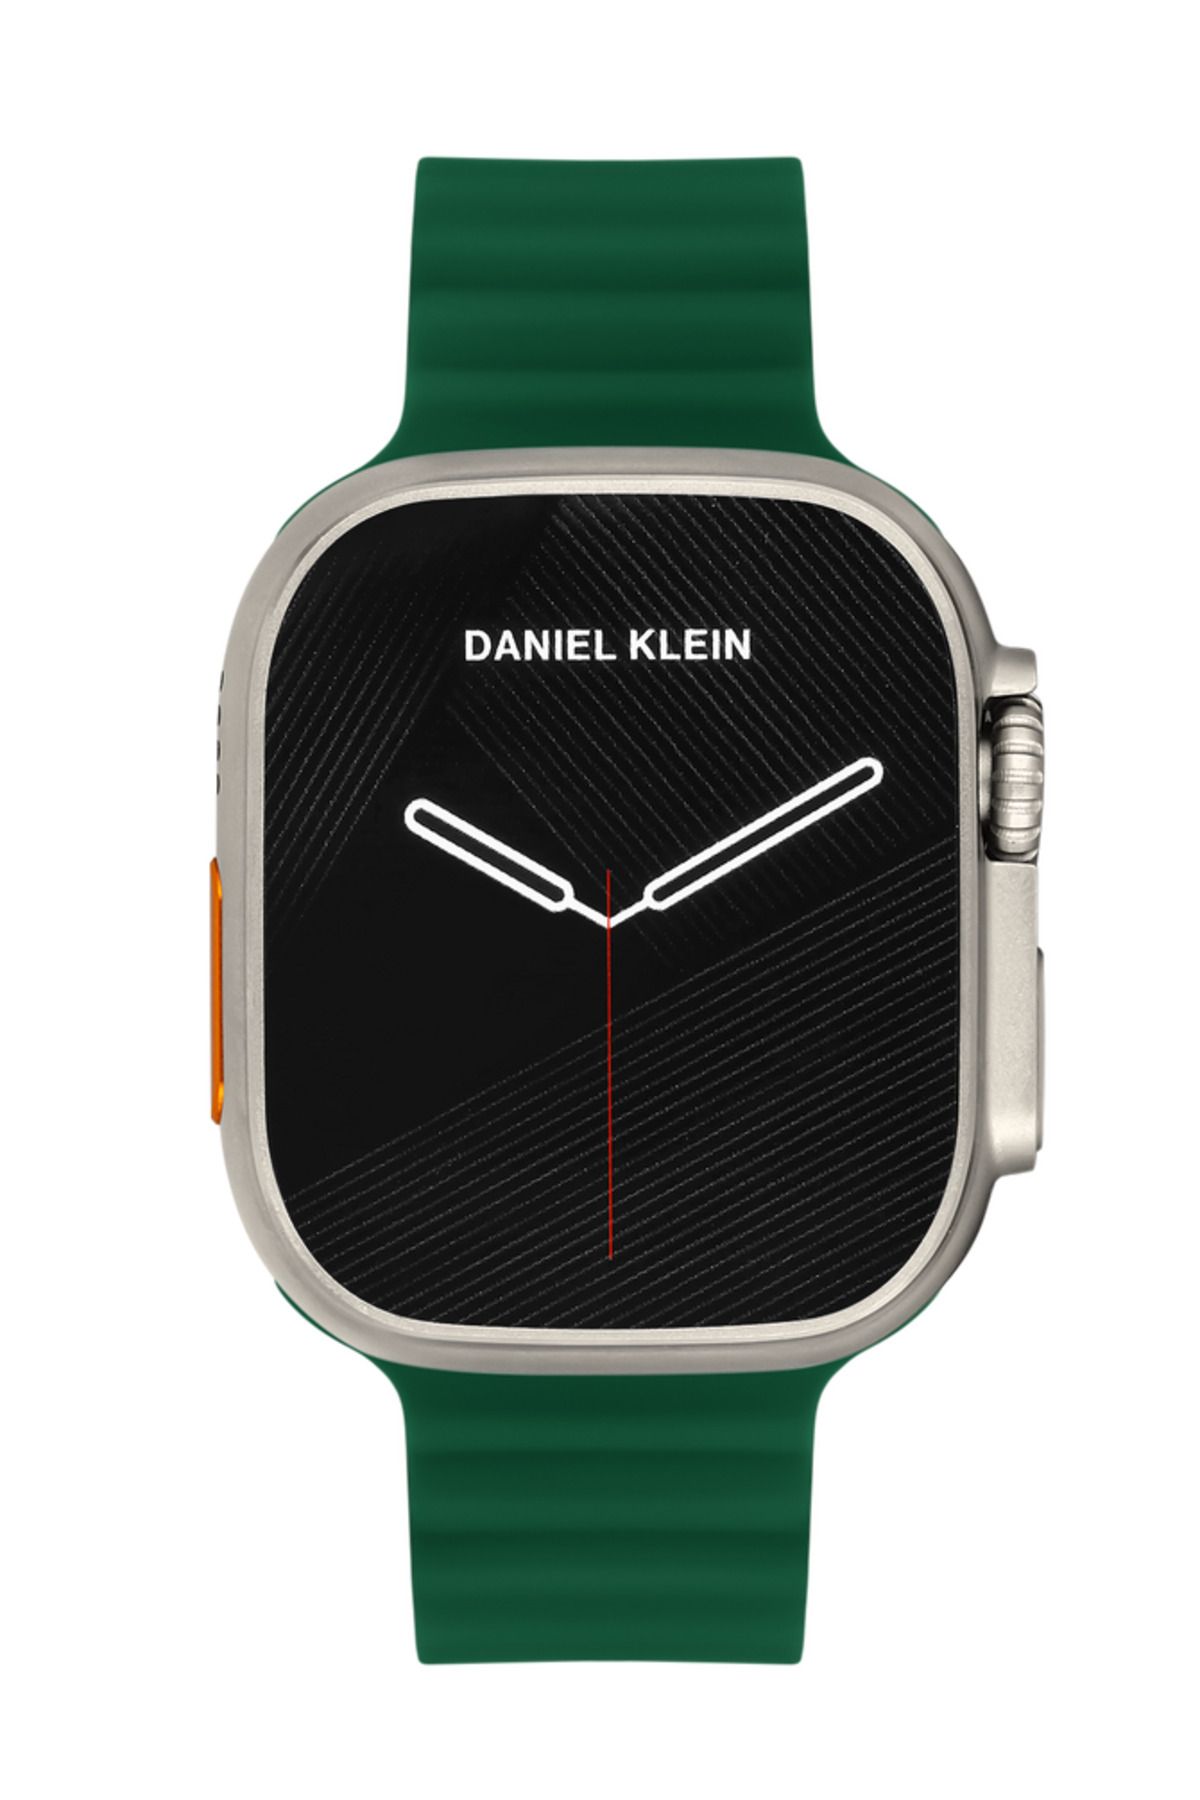 Daniel Klein Smart Watch Sesli Görüşme Özellikli Akıllı Saat Dt 8 Ultra Gümüş-gri